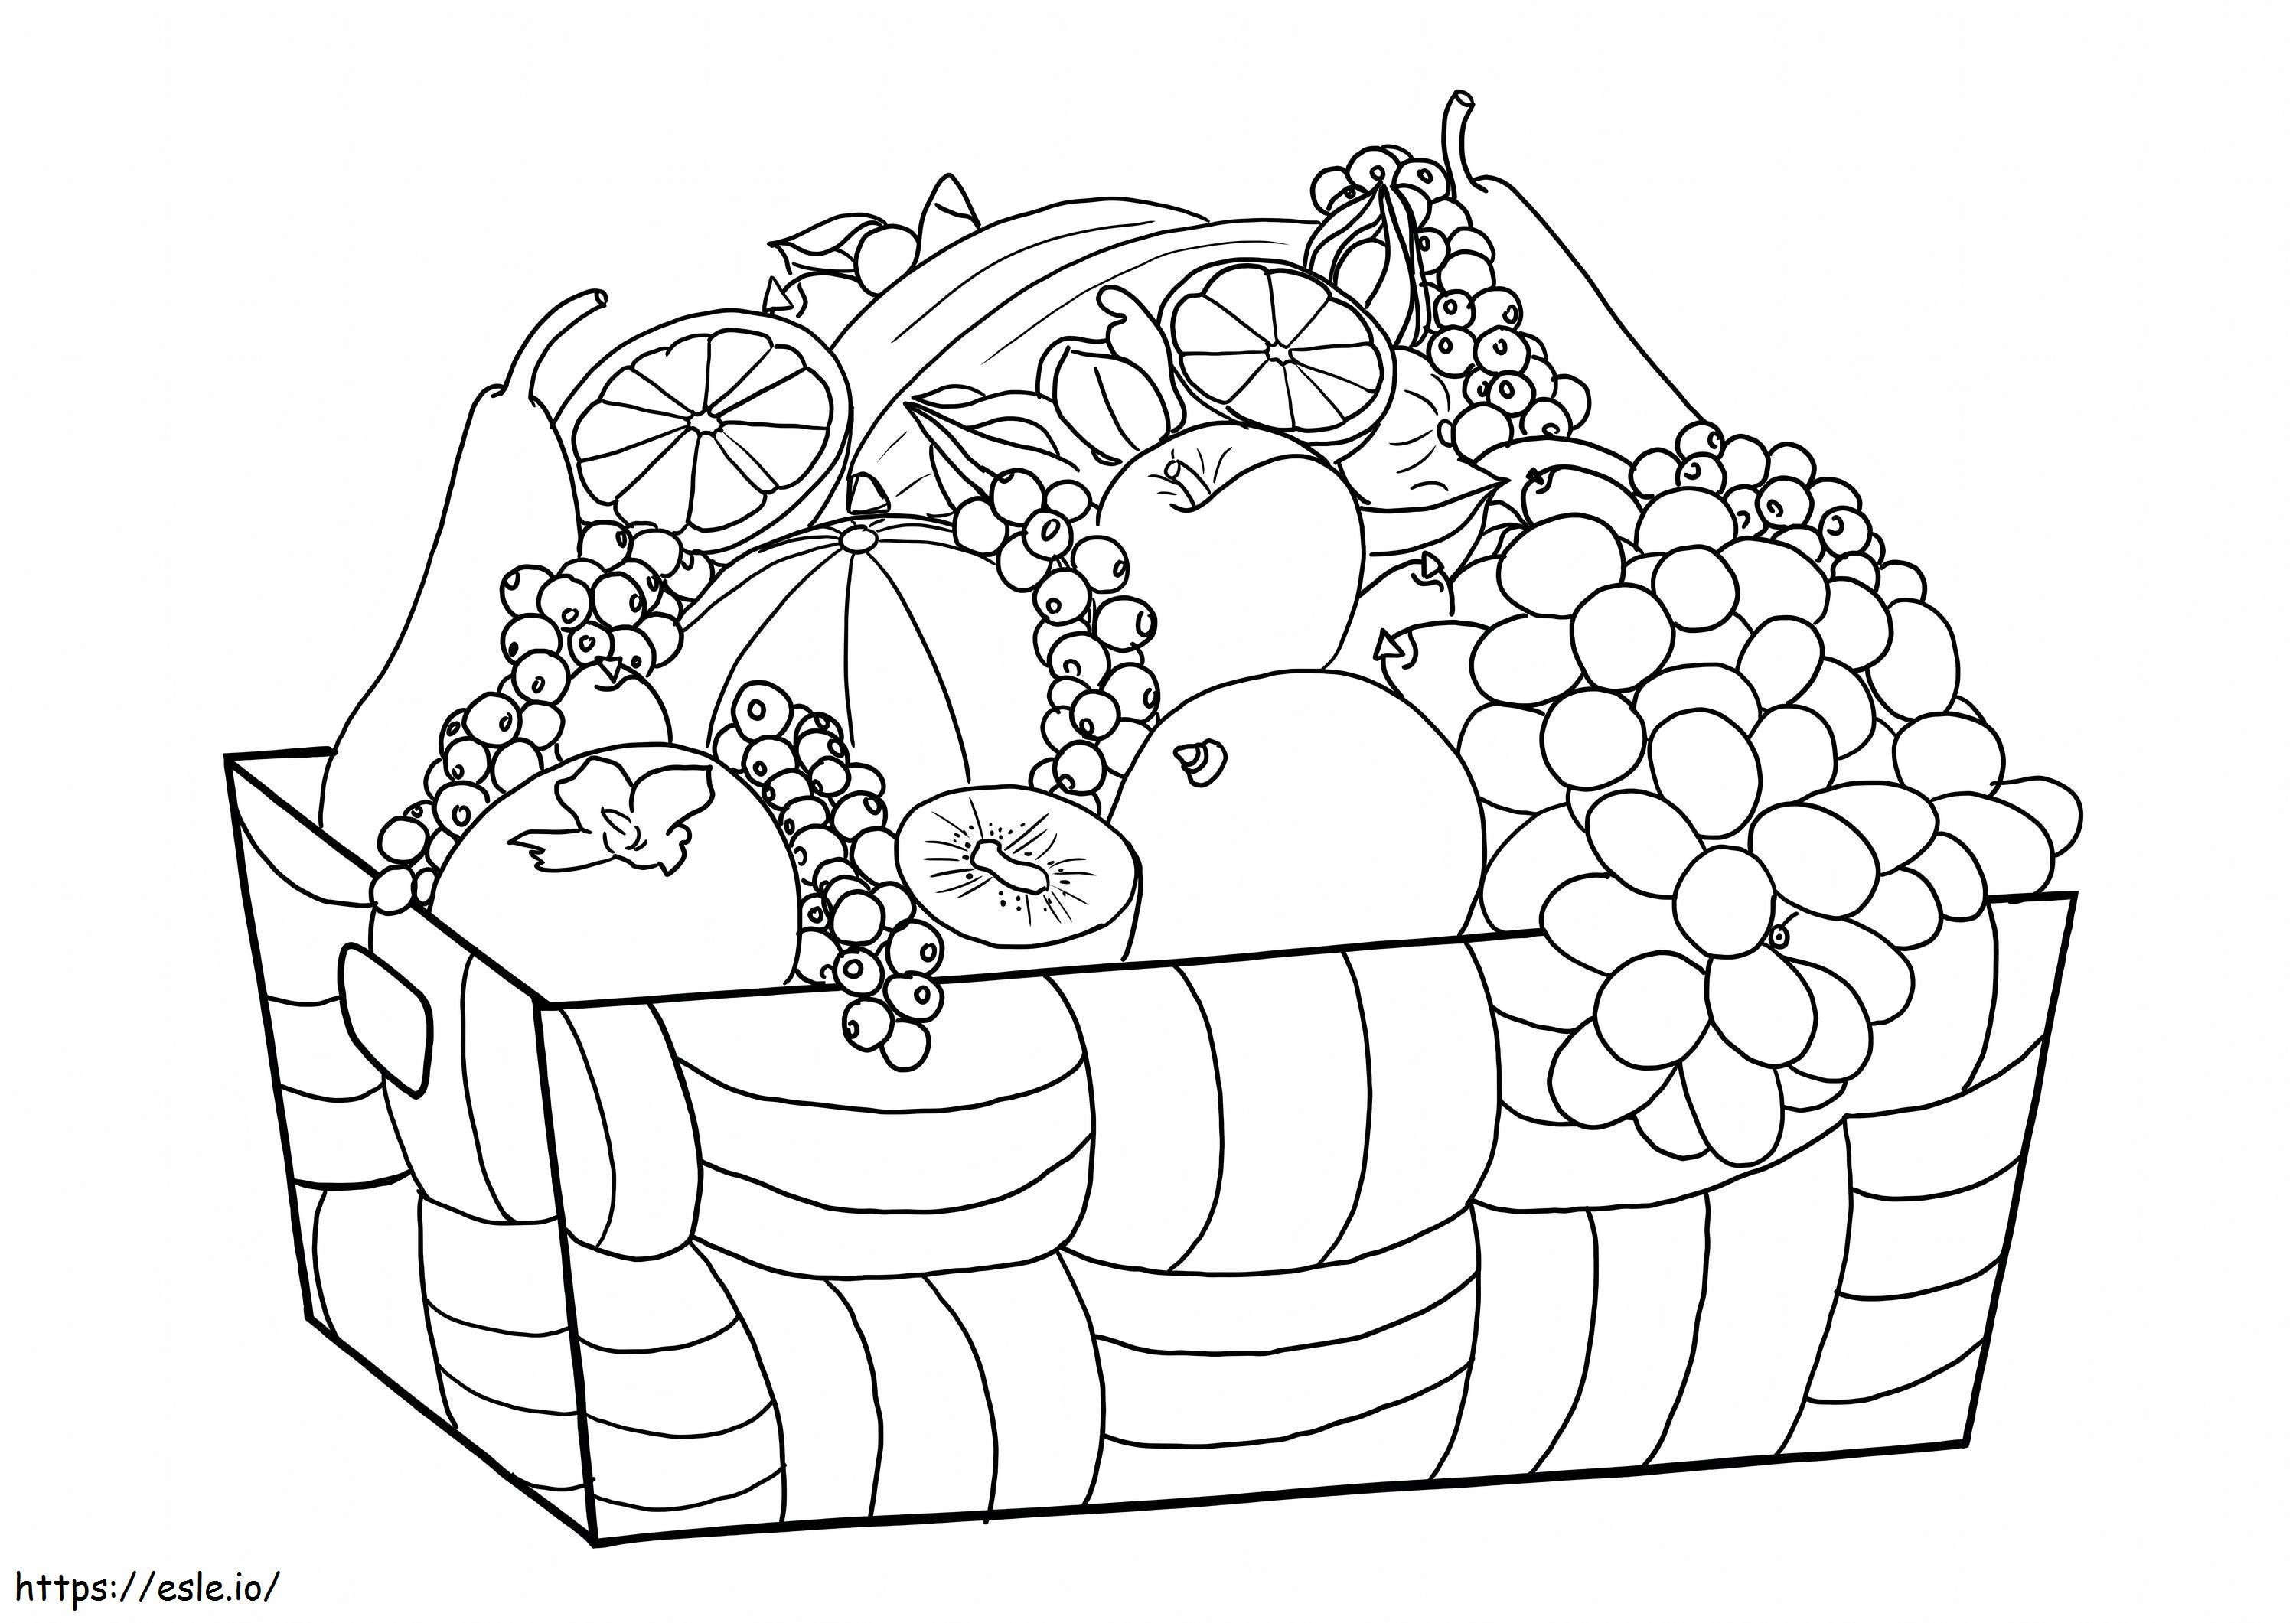 Ölçekli Kutuda Meyve Ve Sebzeler boyama